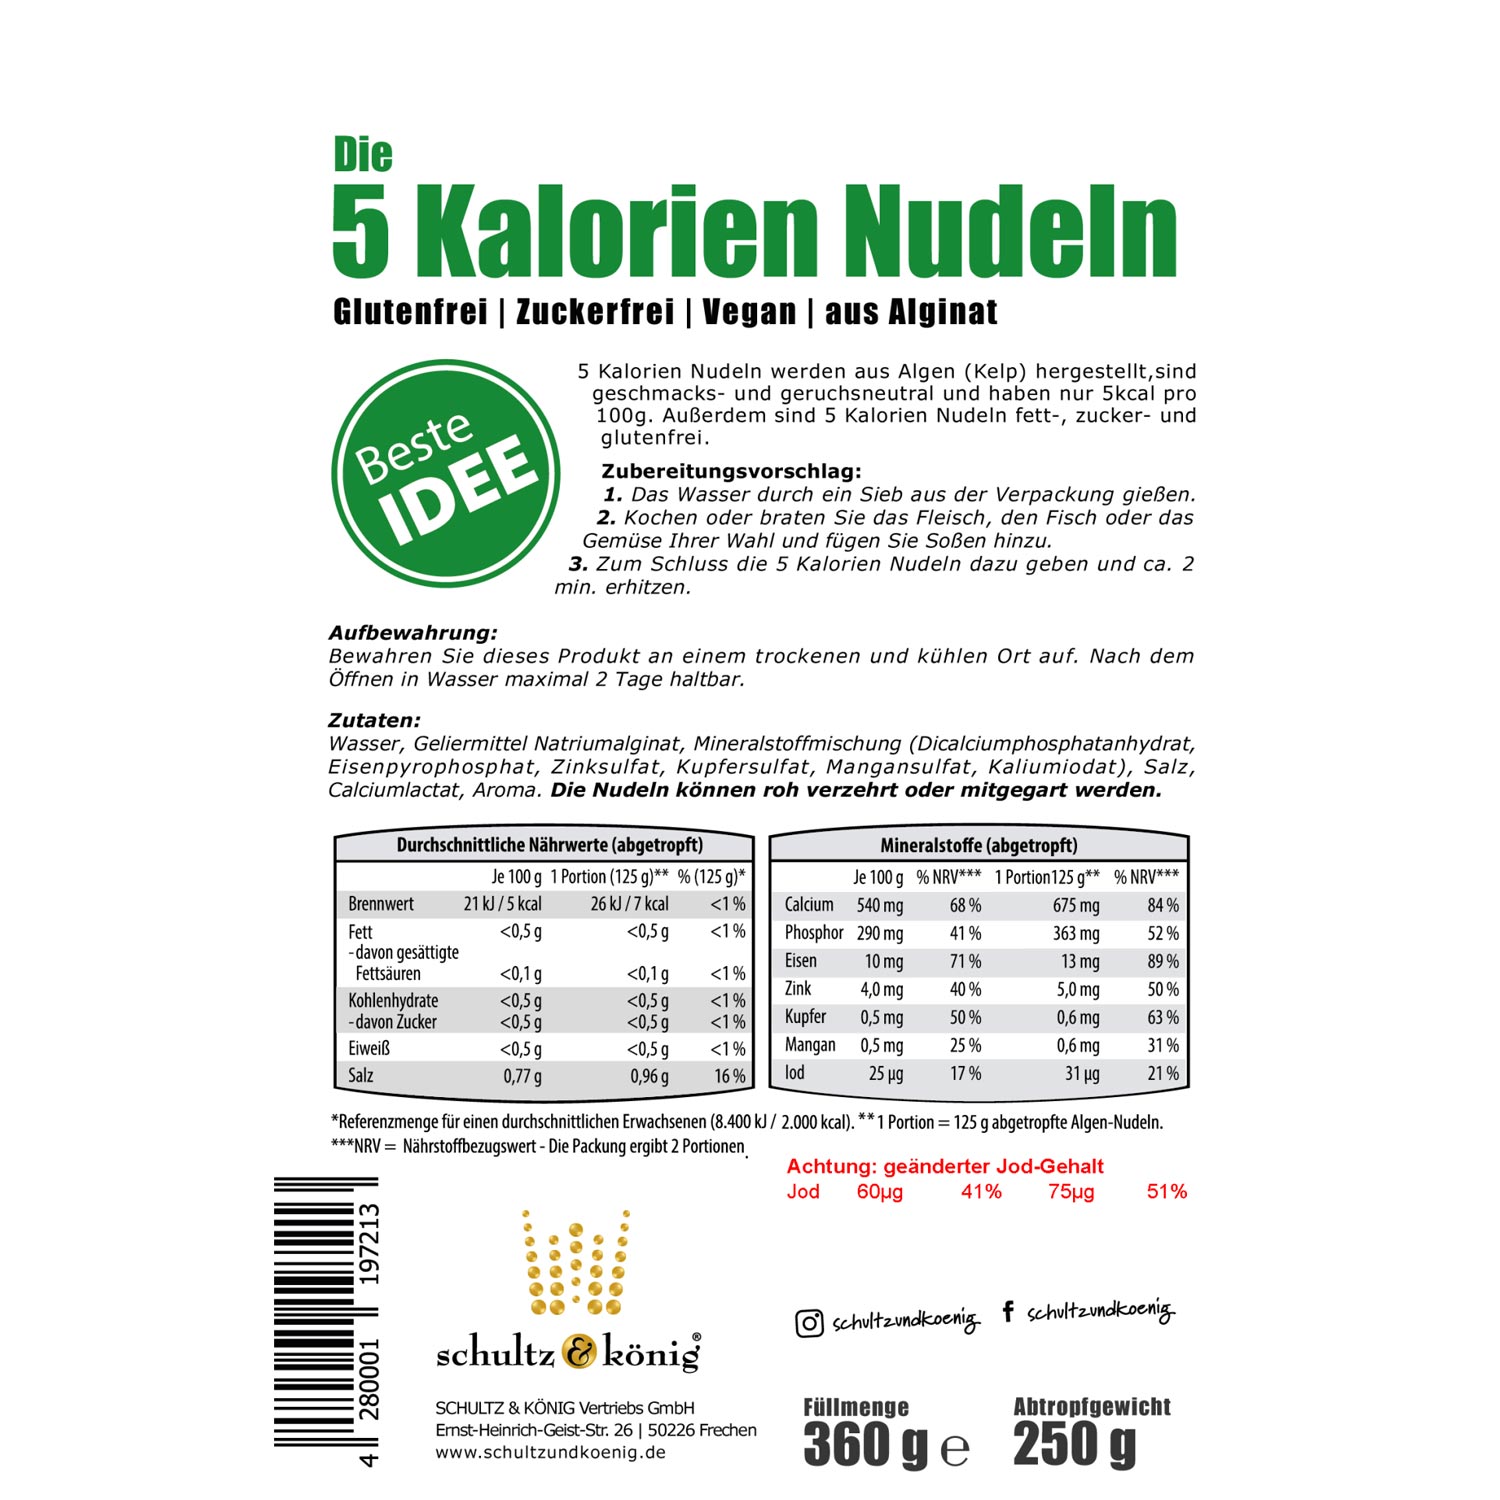 Kelp Nudeln von Schulz & König - Etikett Rückseite